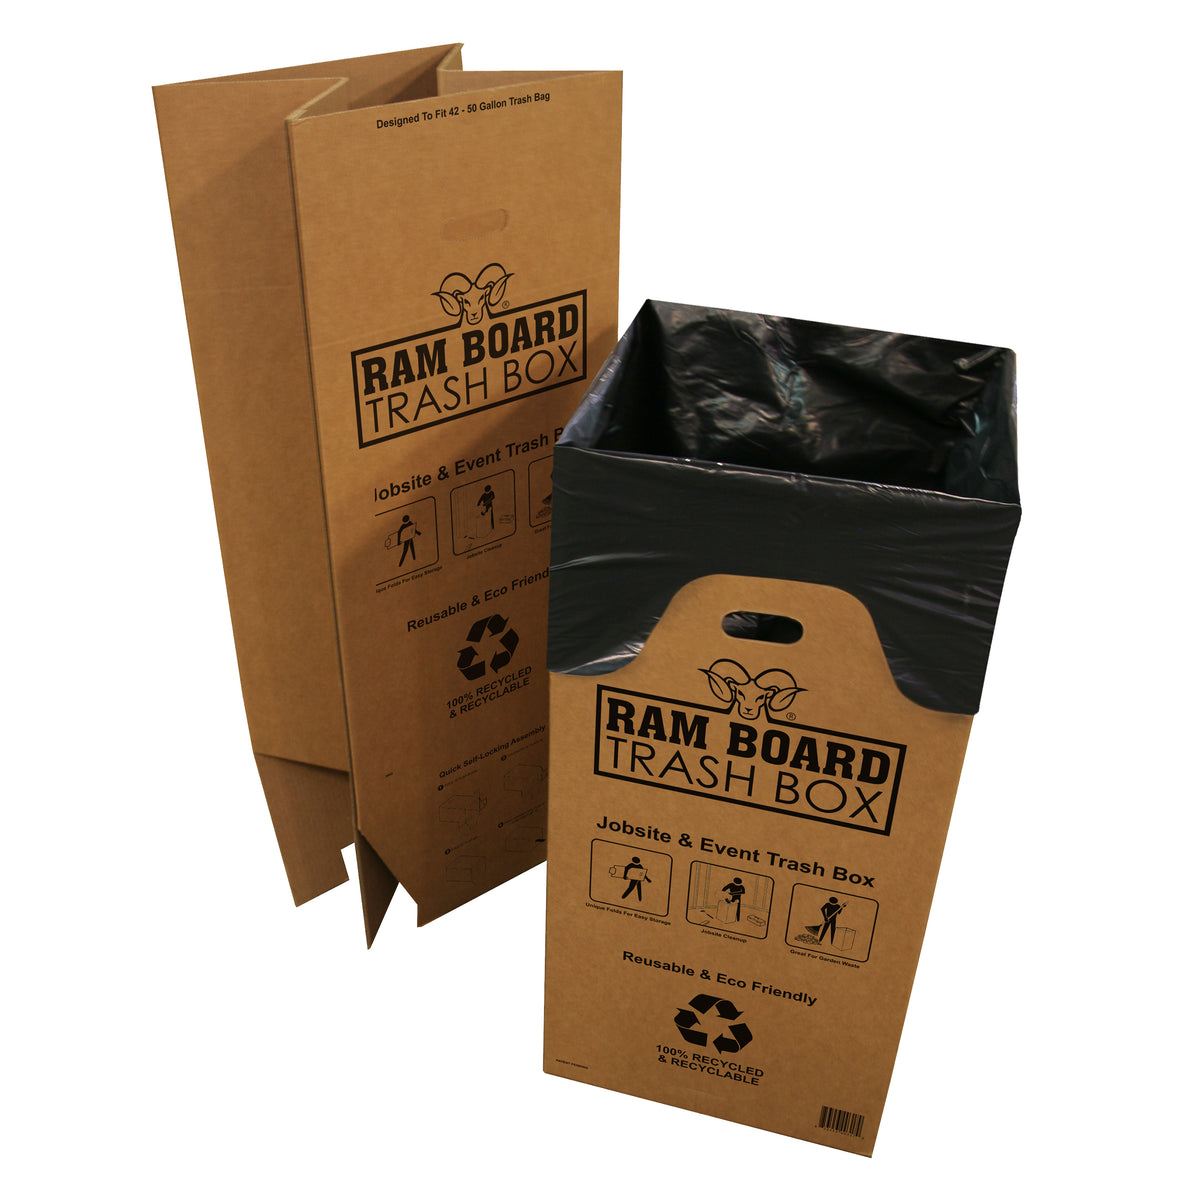 Ram Board Trash Box